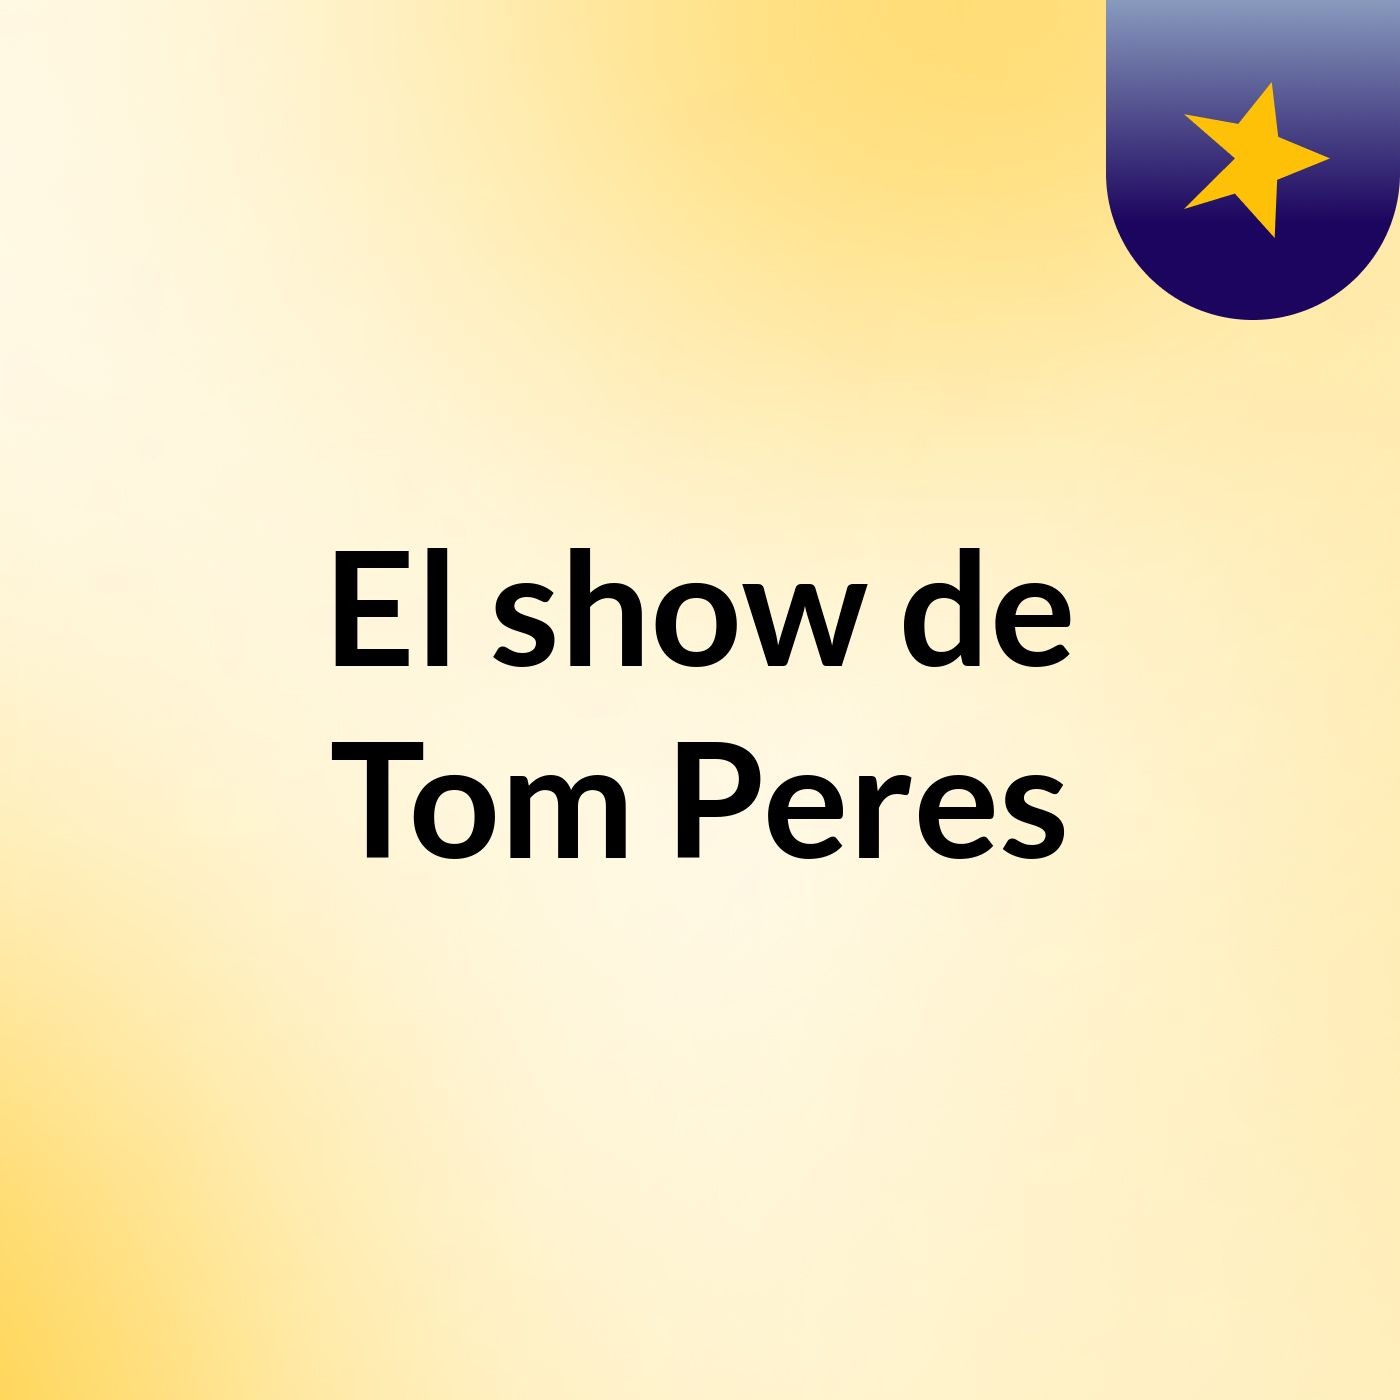 El show de Tom Peres